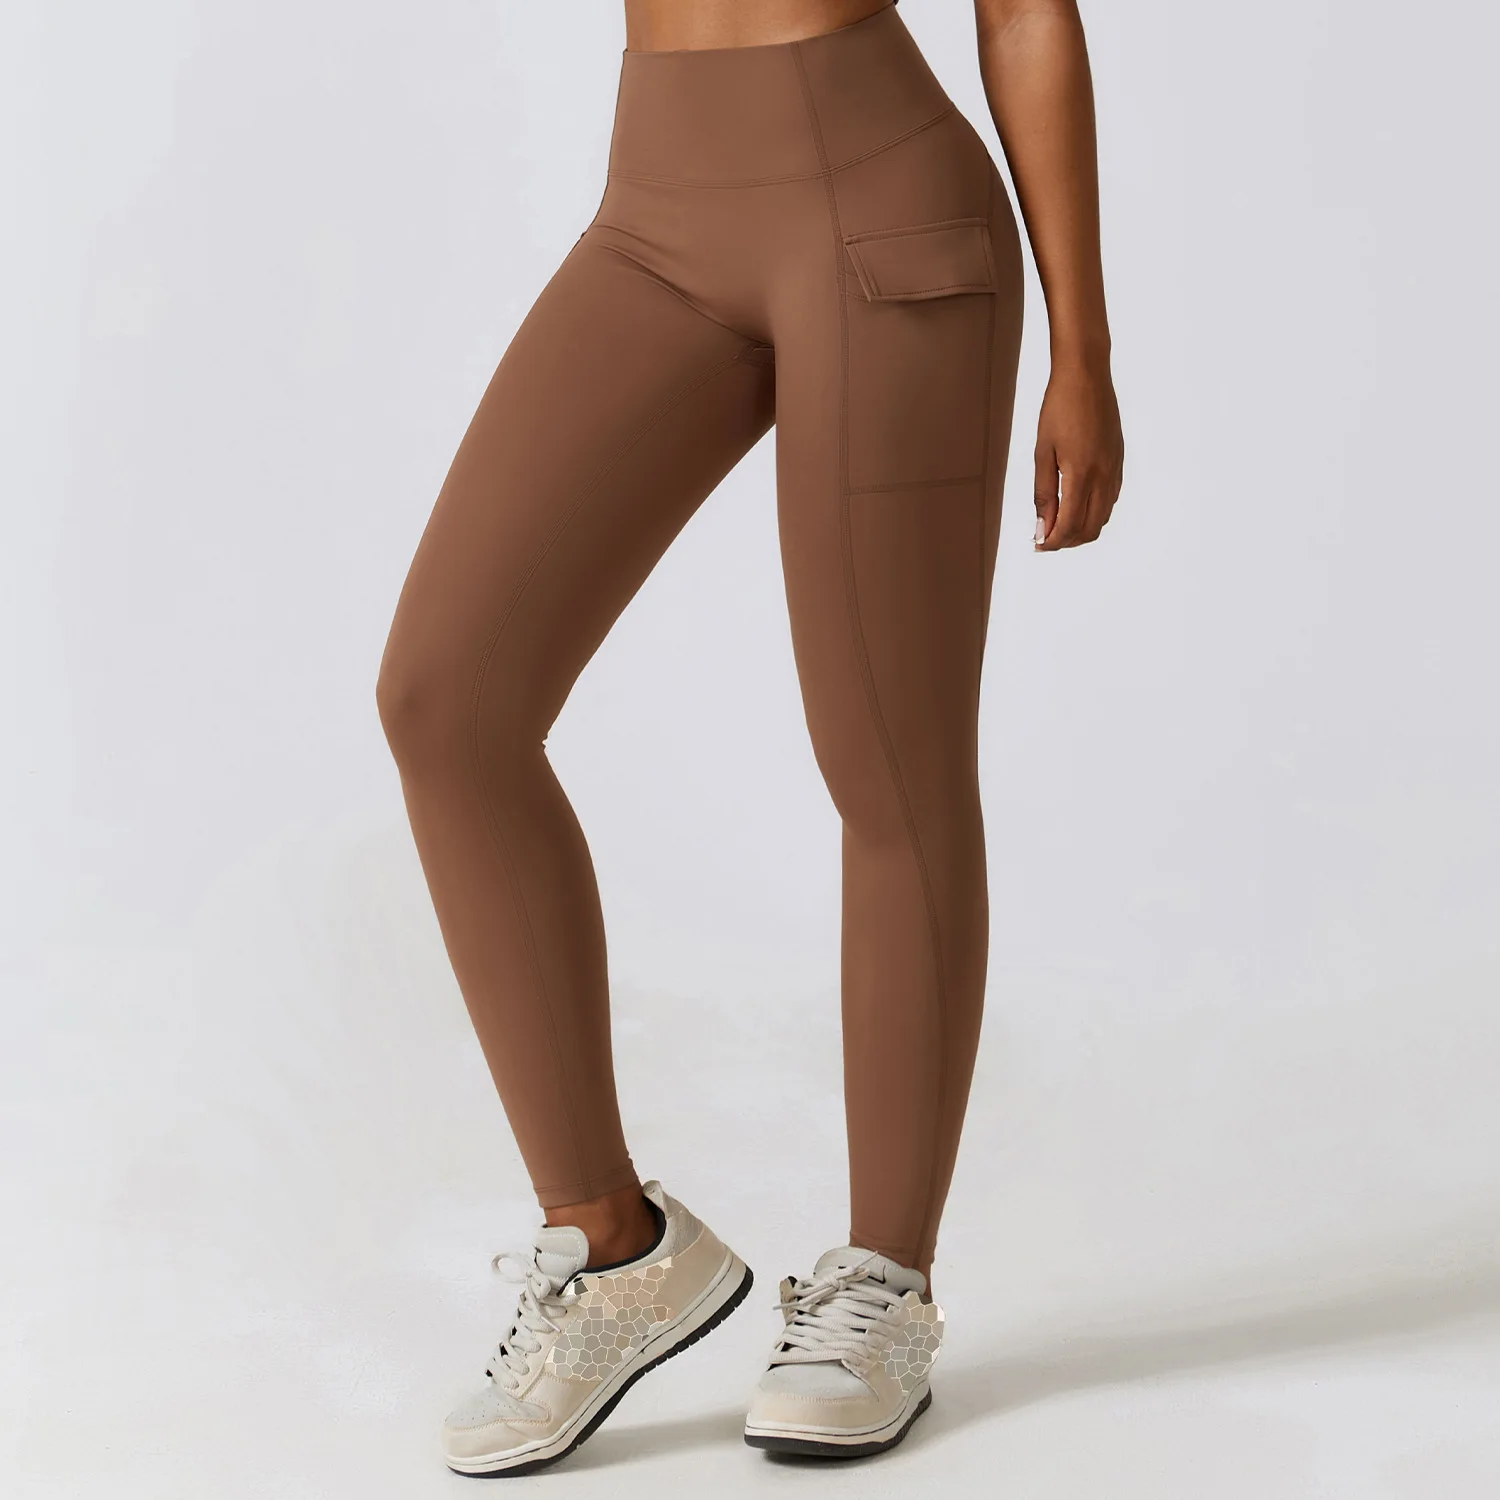 Black Sexy Women Yoga Sport Leggings Phone Pocket Fitness Running